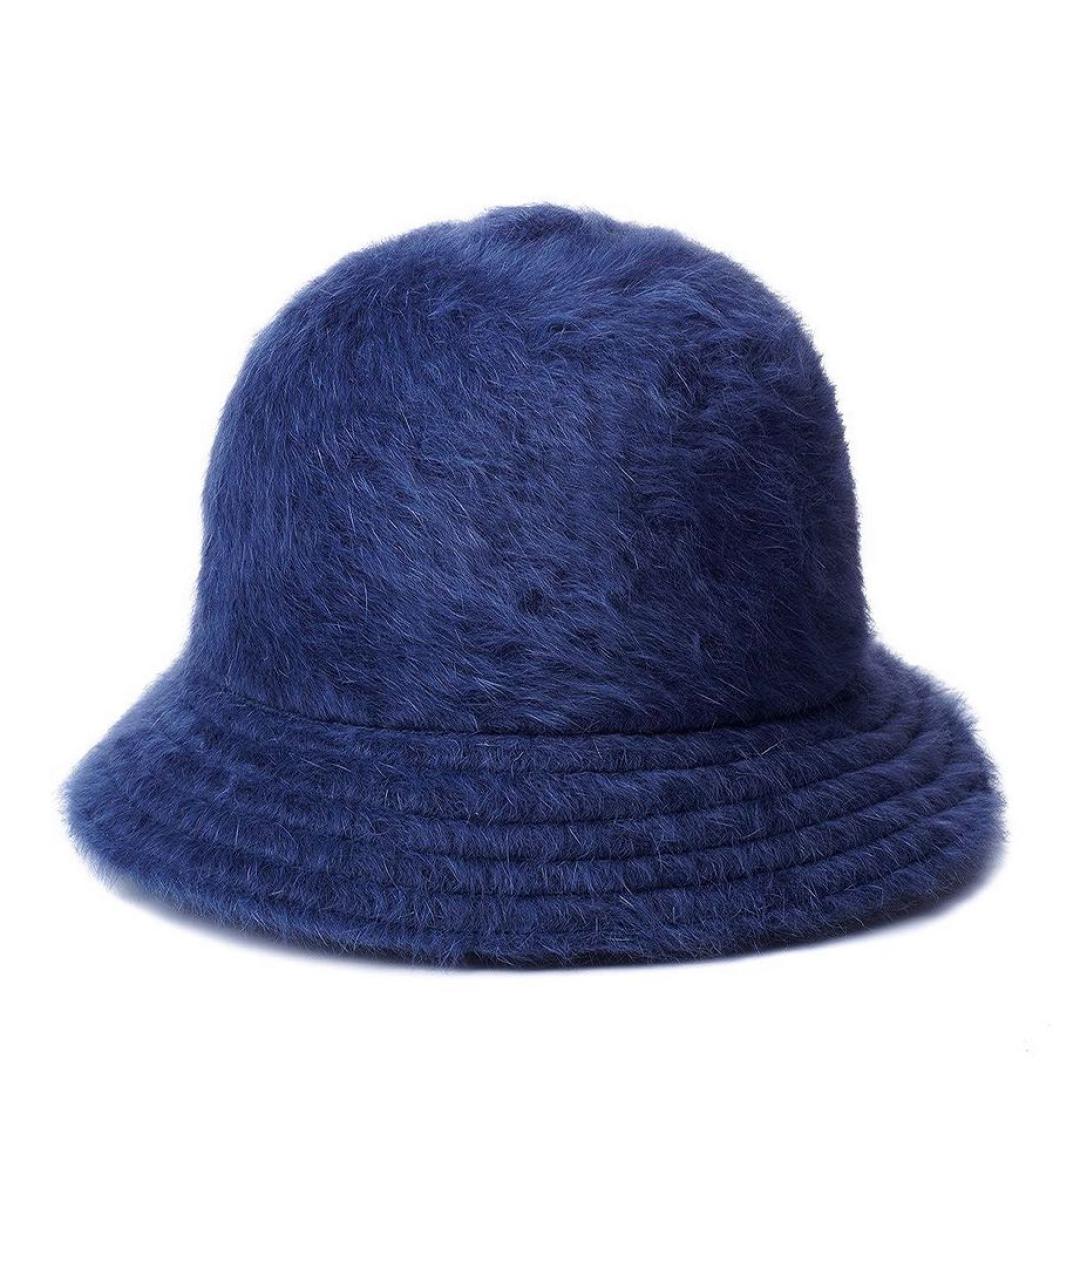 Kangol Темно-синяя шляпа, фото 2